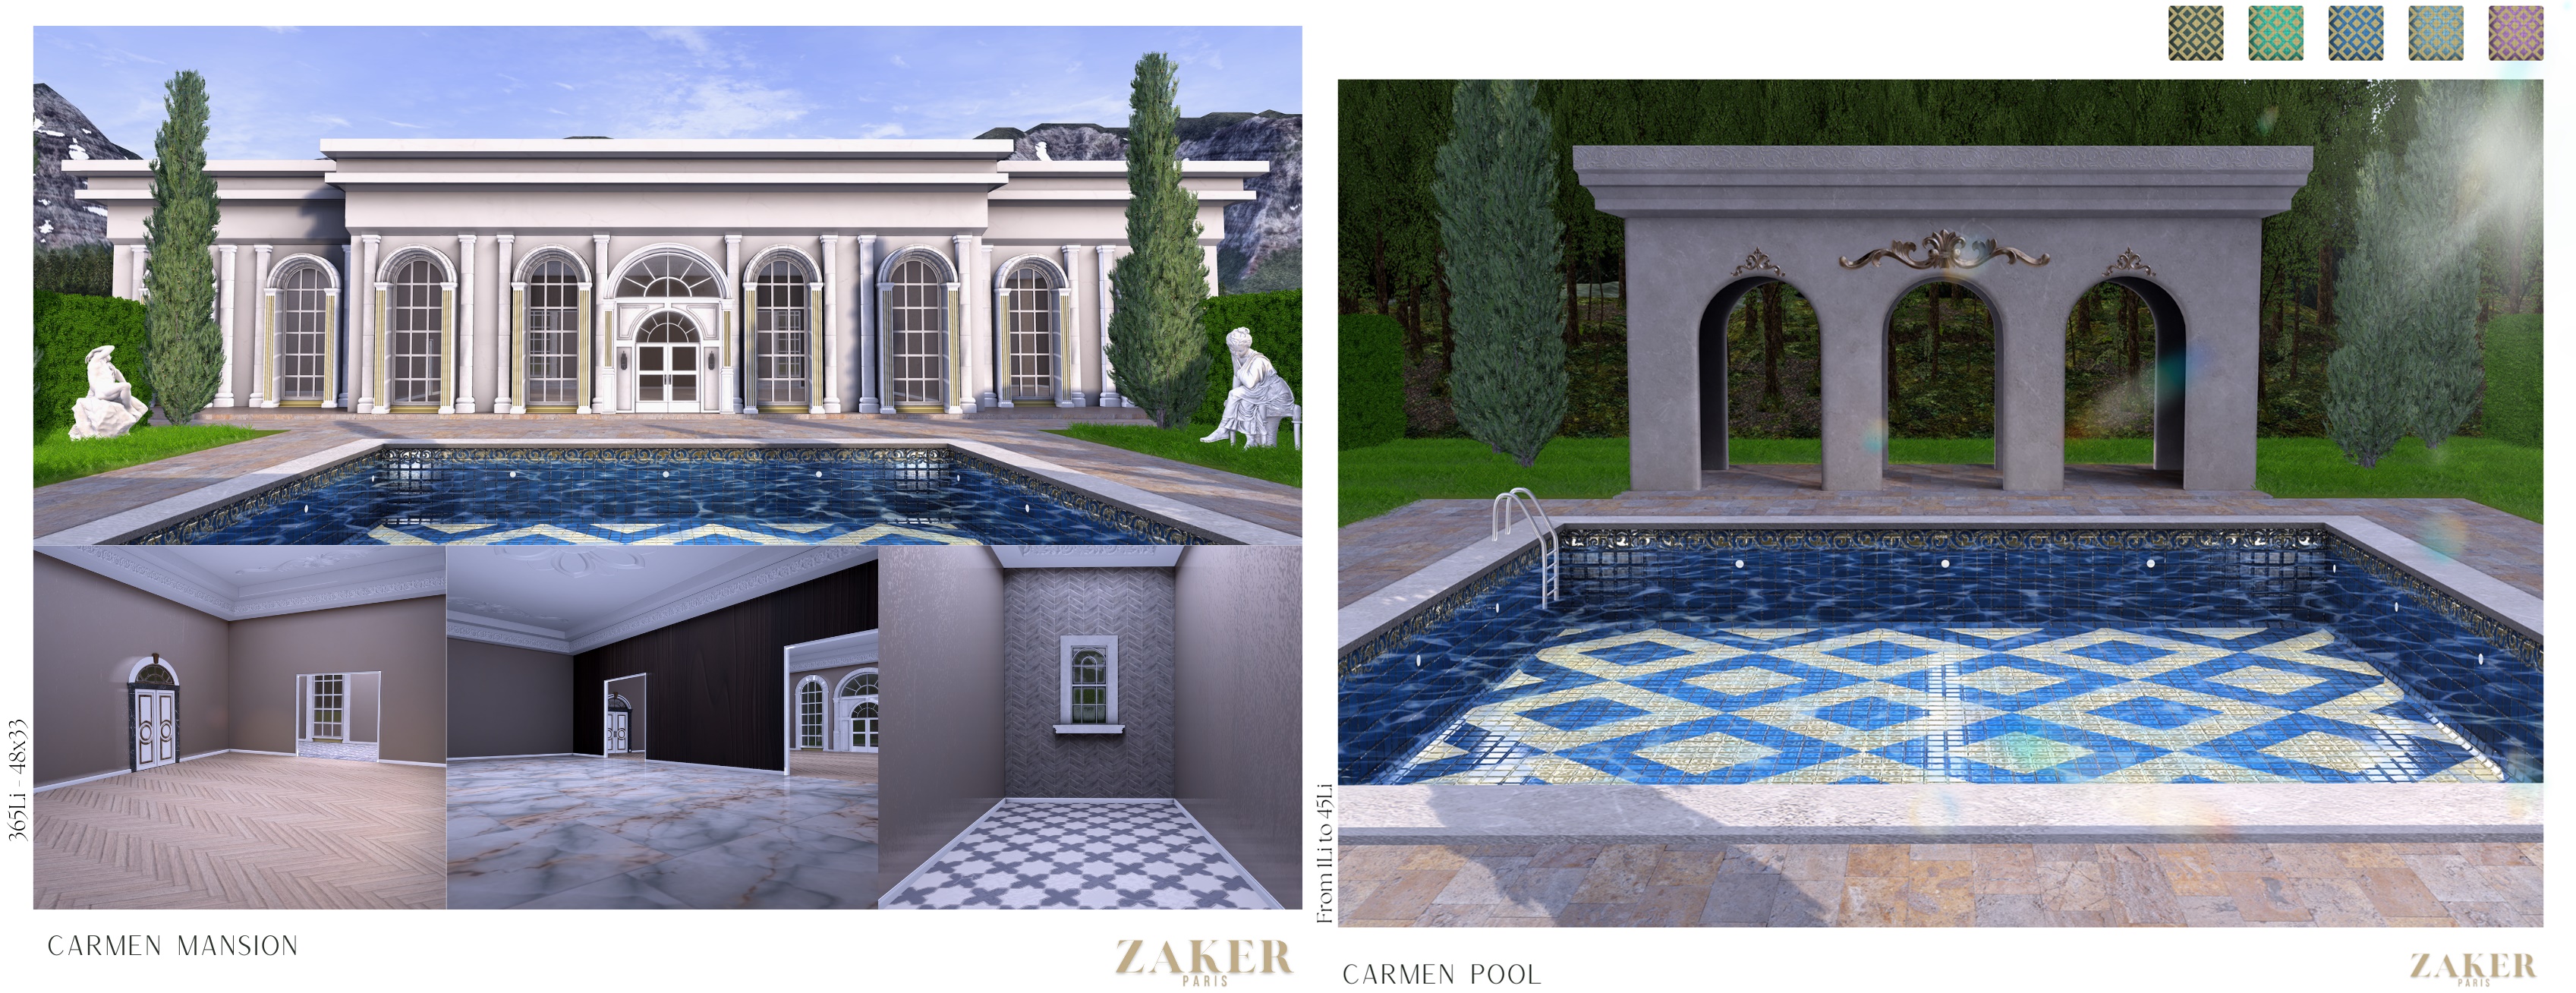 Zaker – Carmen Mansion & Pool